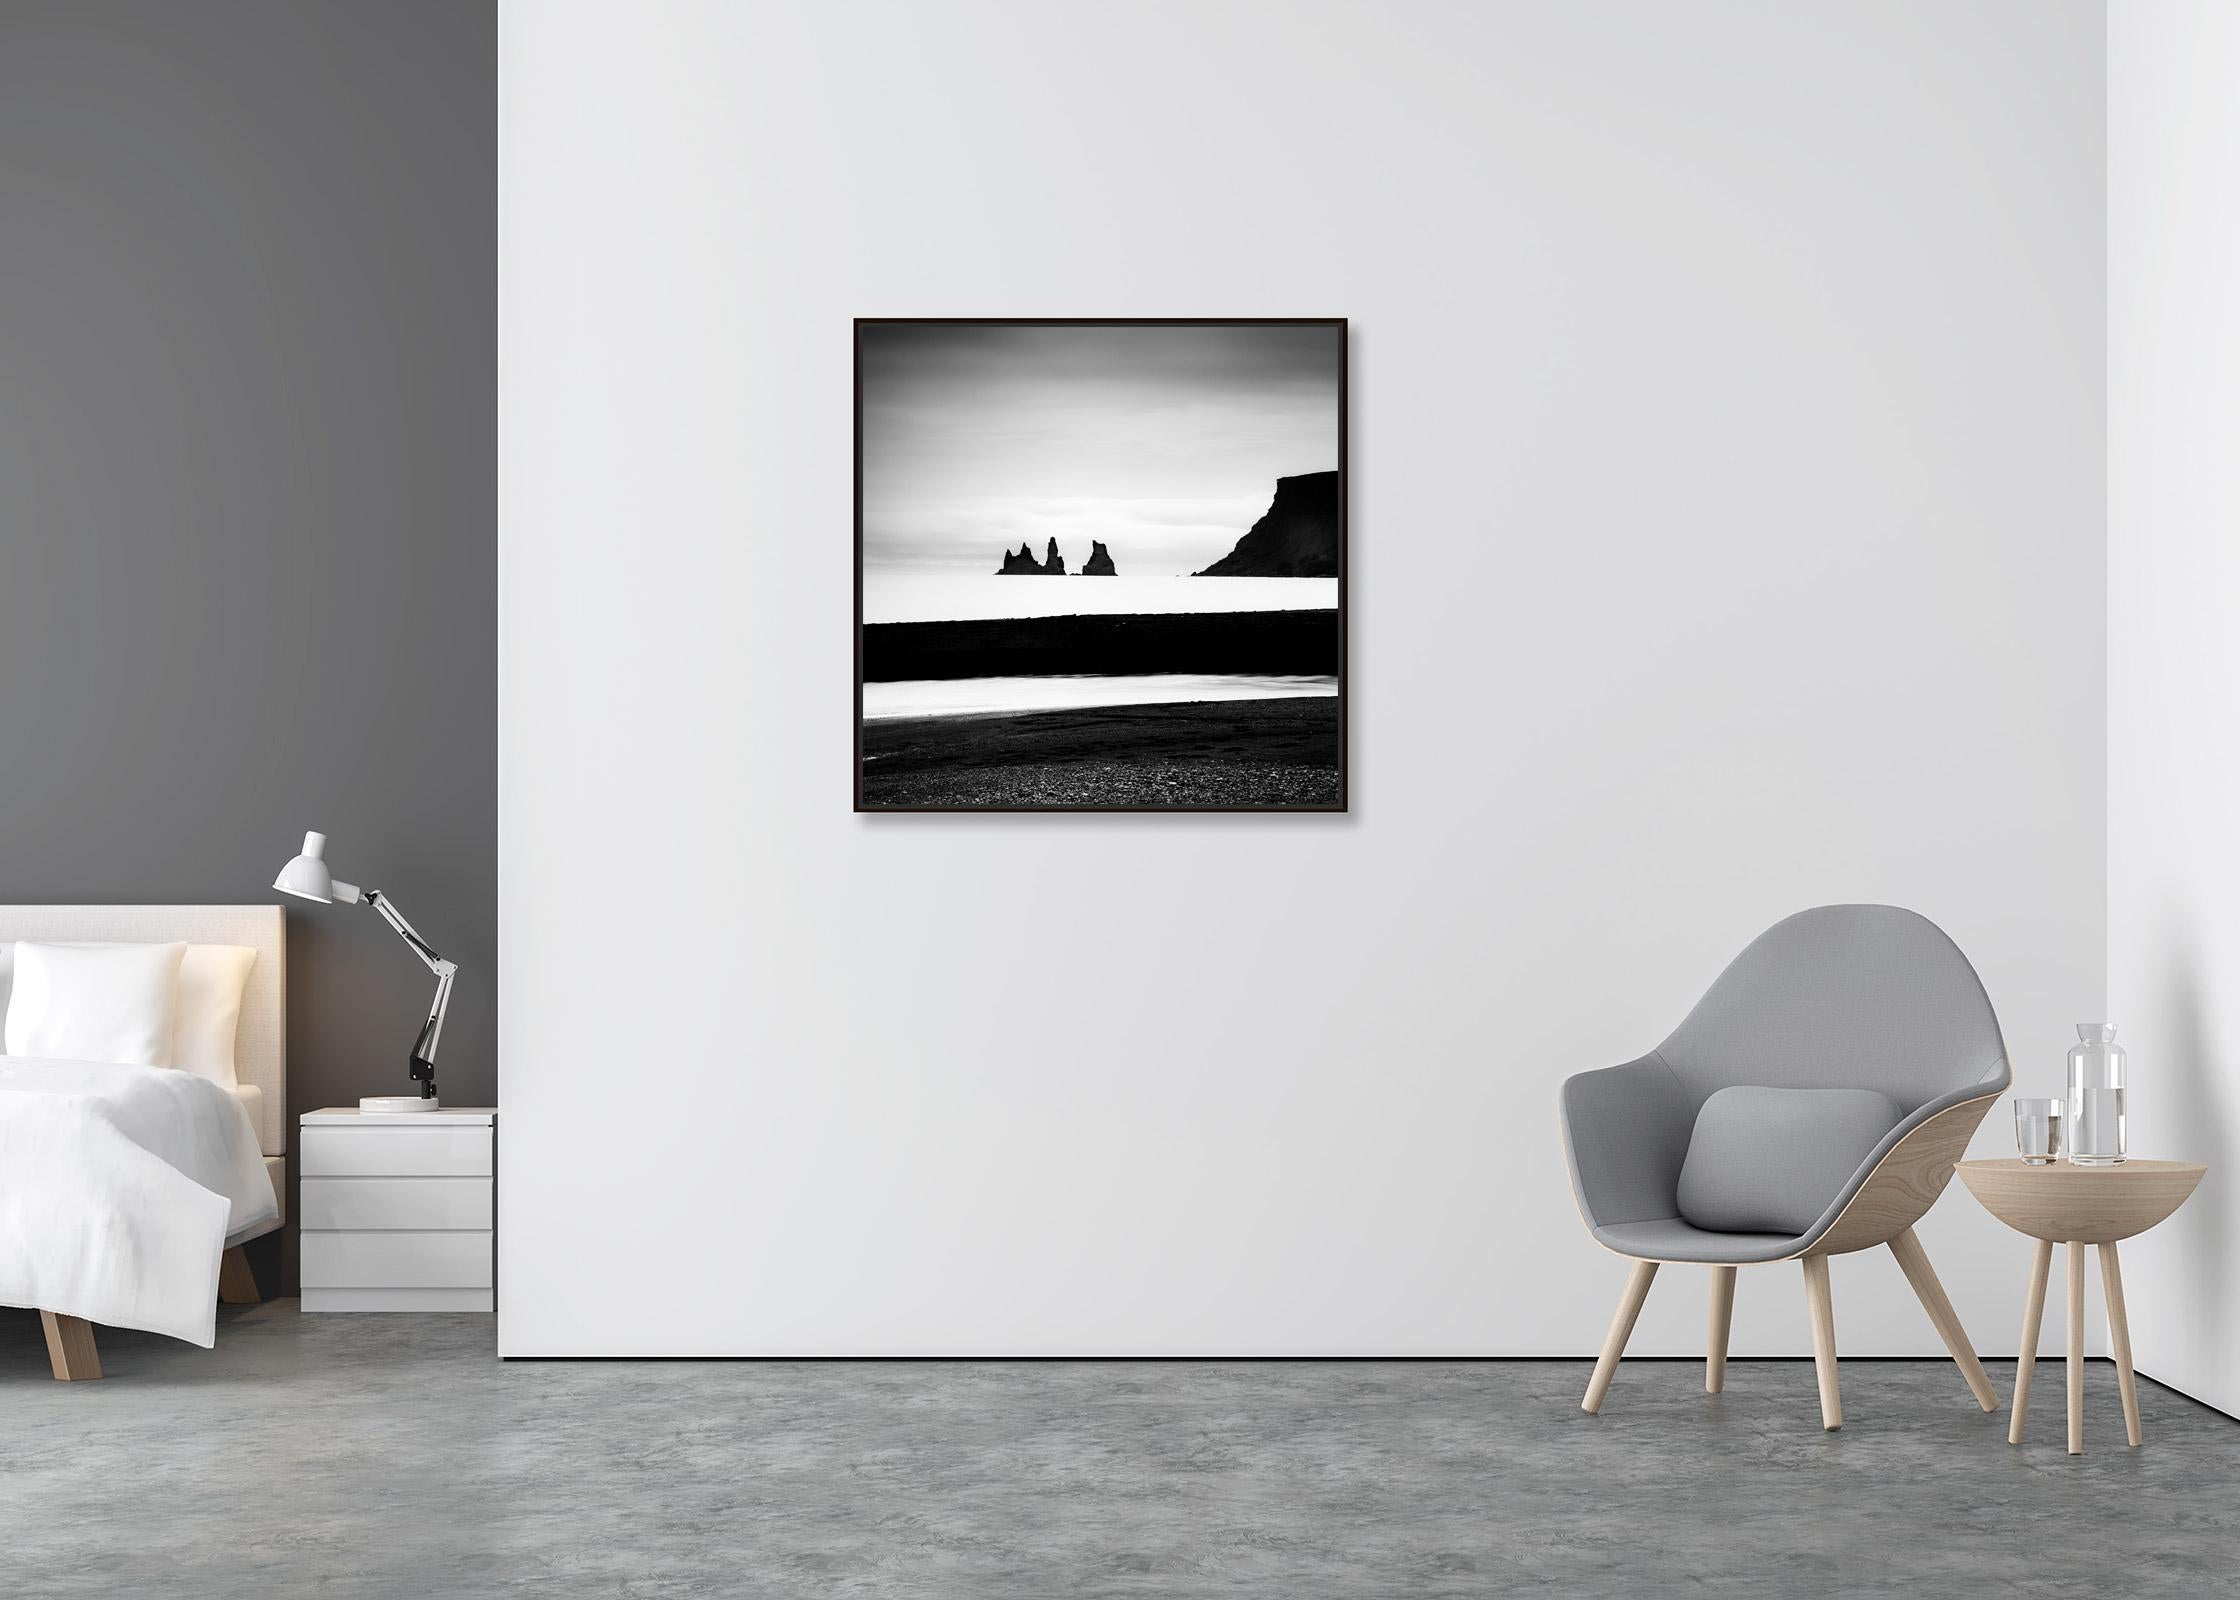 Reynisdrangar, plage de sable noir, Islande, photographie noir et blanc, paysage - Contemporain Photograph par Gerald Berghammer